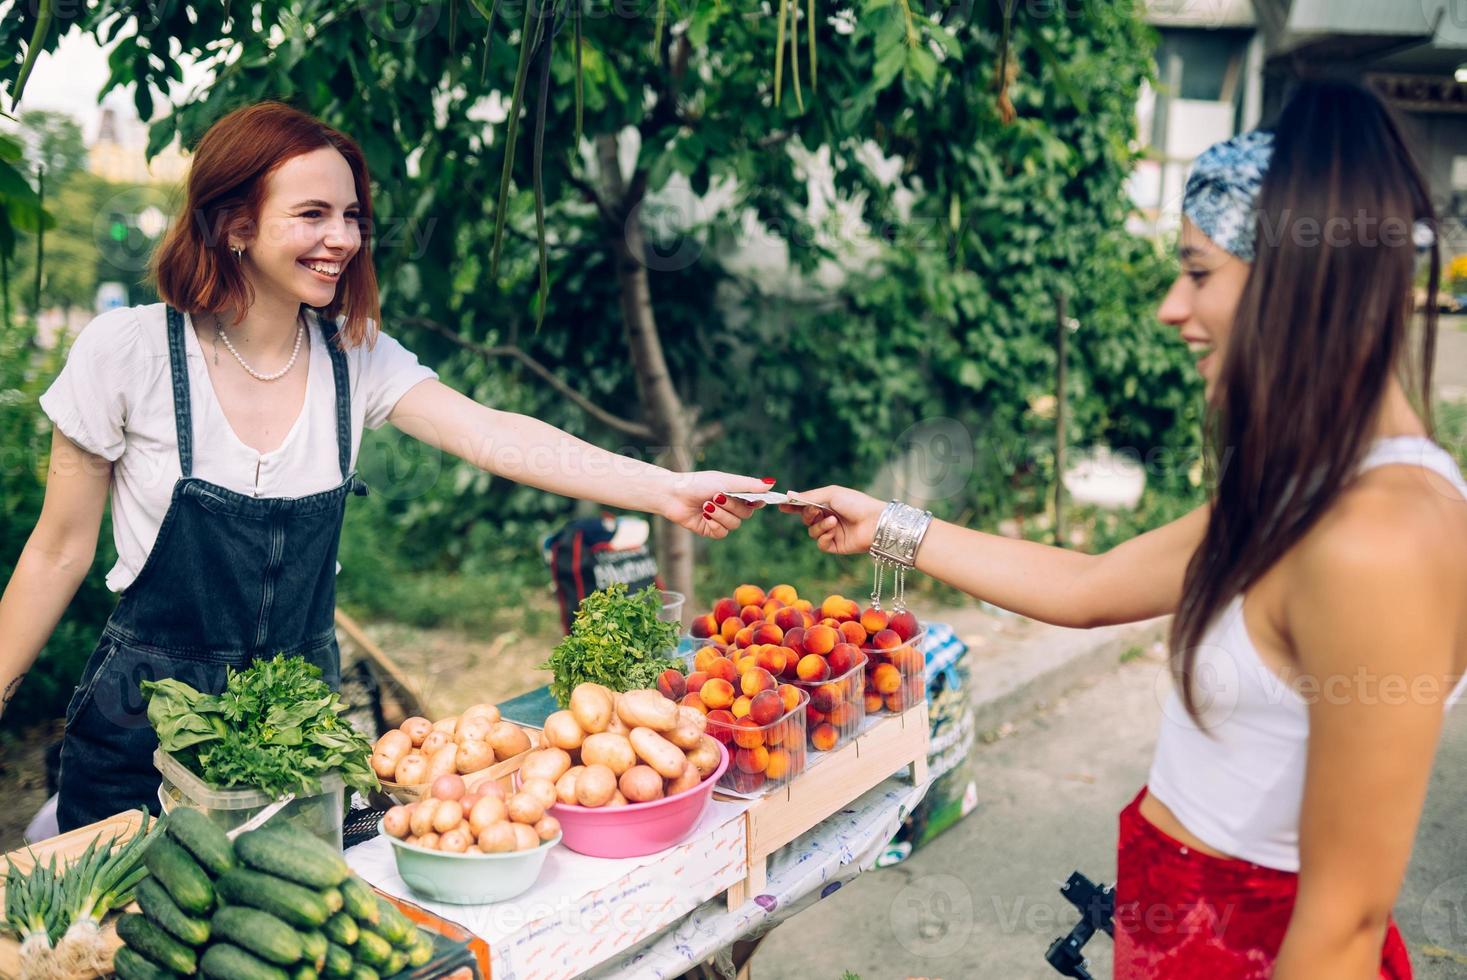 Verkäuferin bietet Bauernmarkt für frisches und biologisches Gemüse an. foto